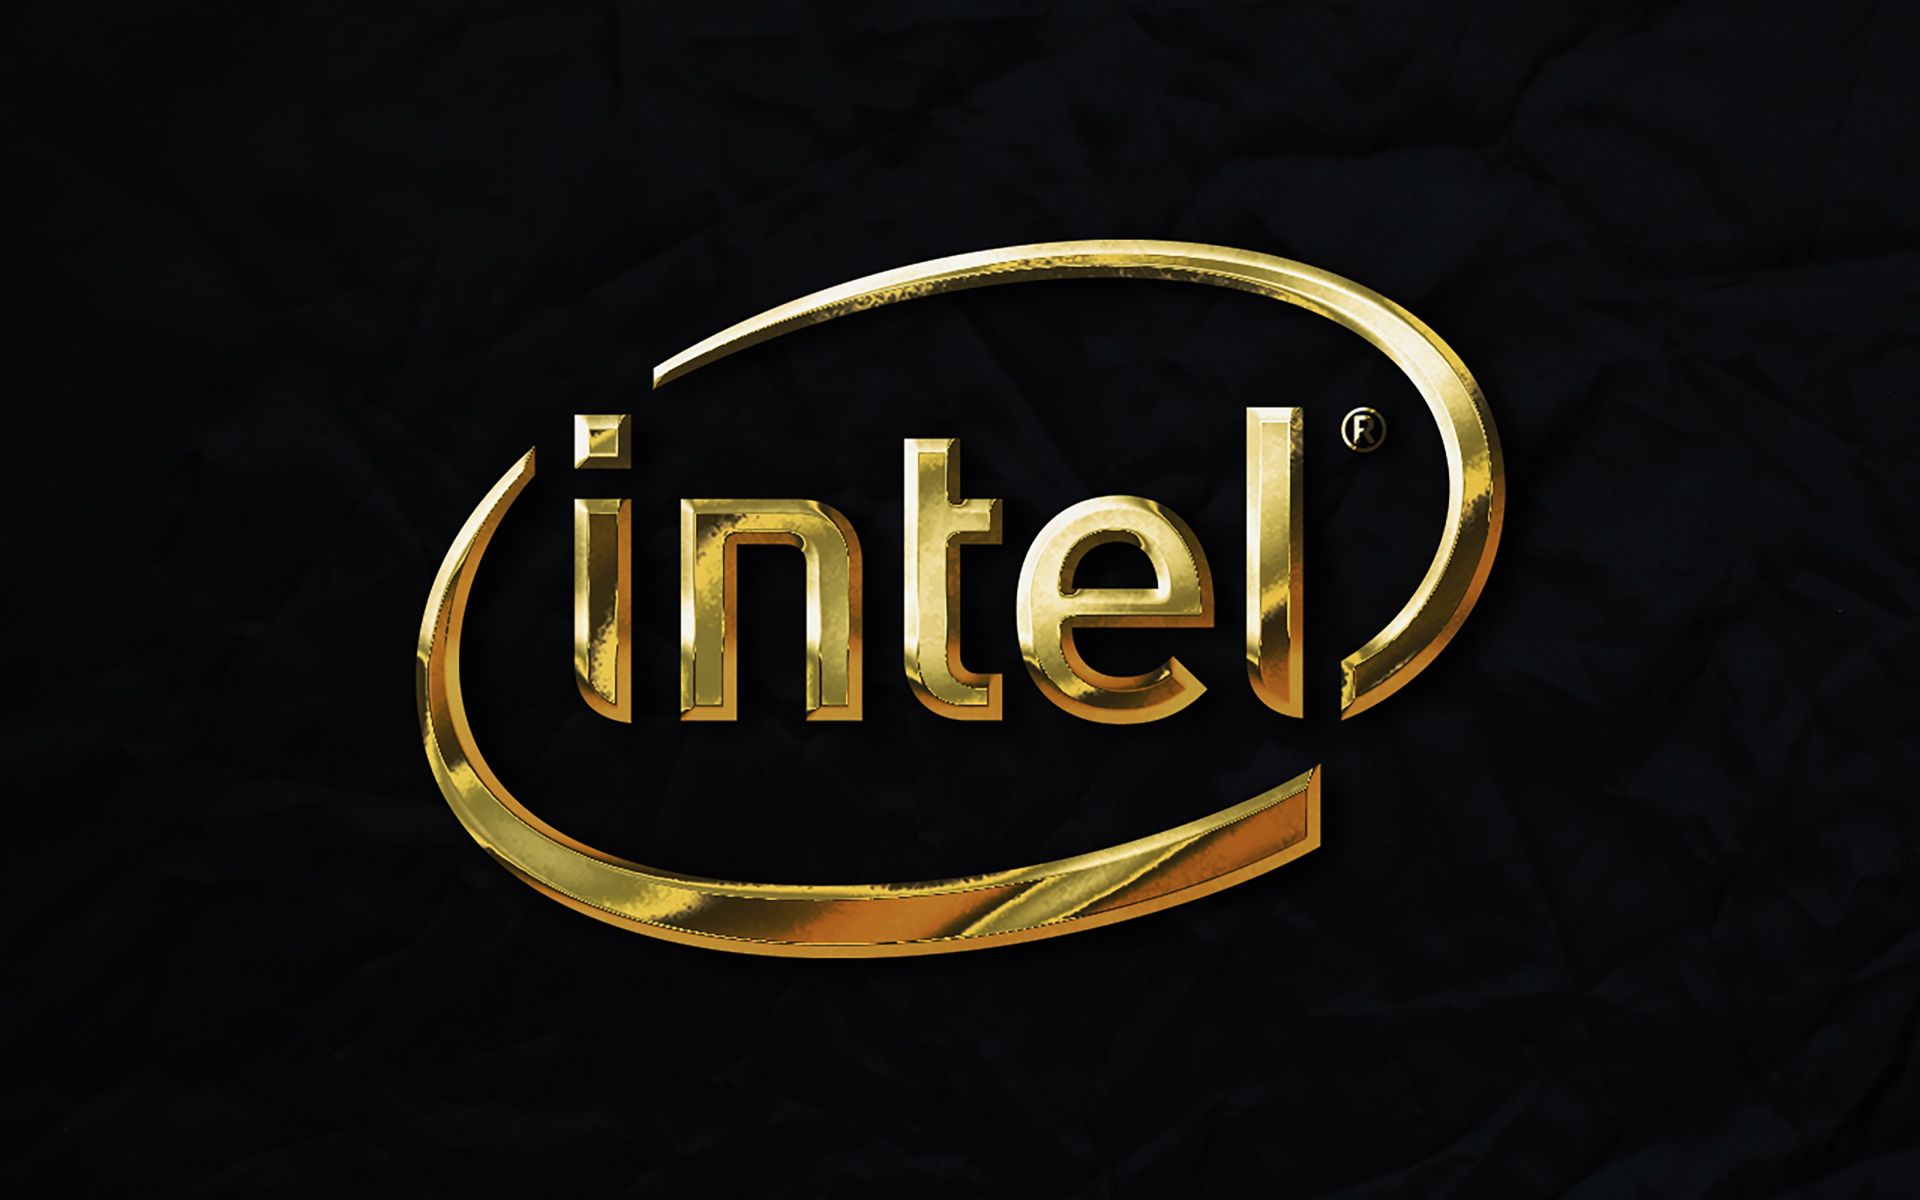 Intel Articul8 AI